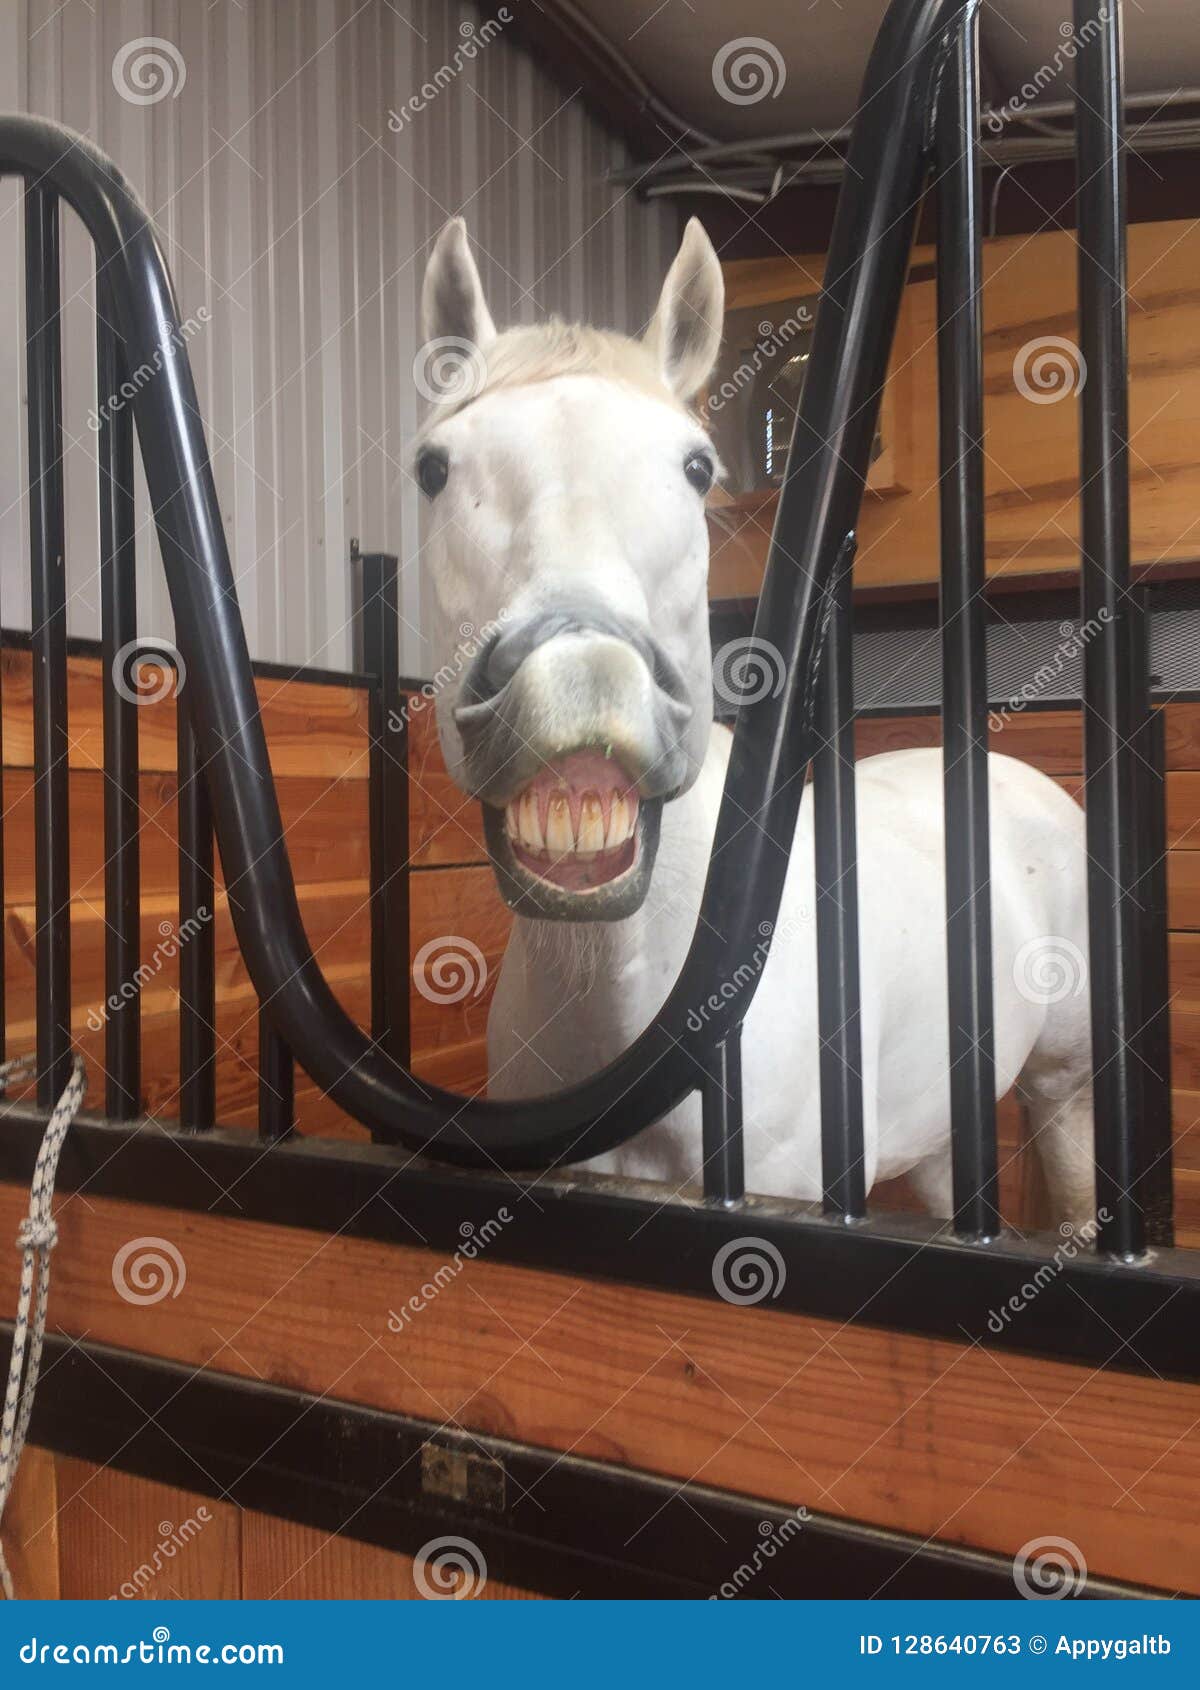 gray american quarter horse gelding inside barn smiling for camera